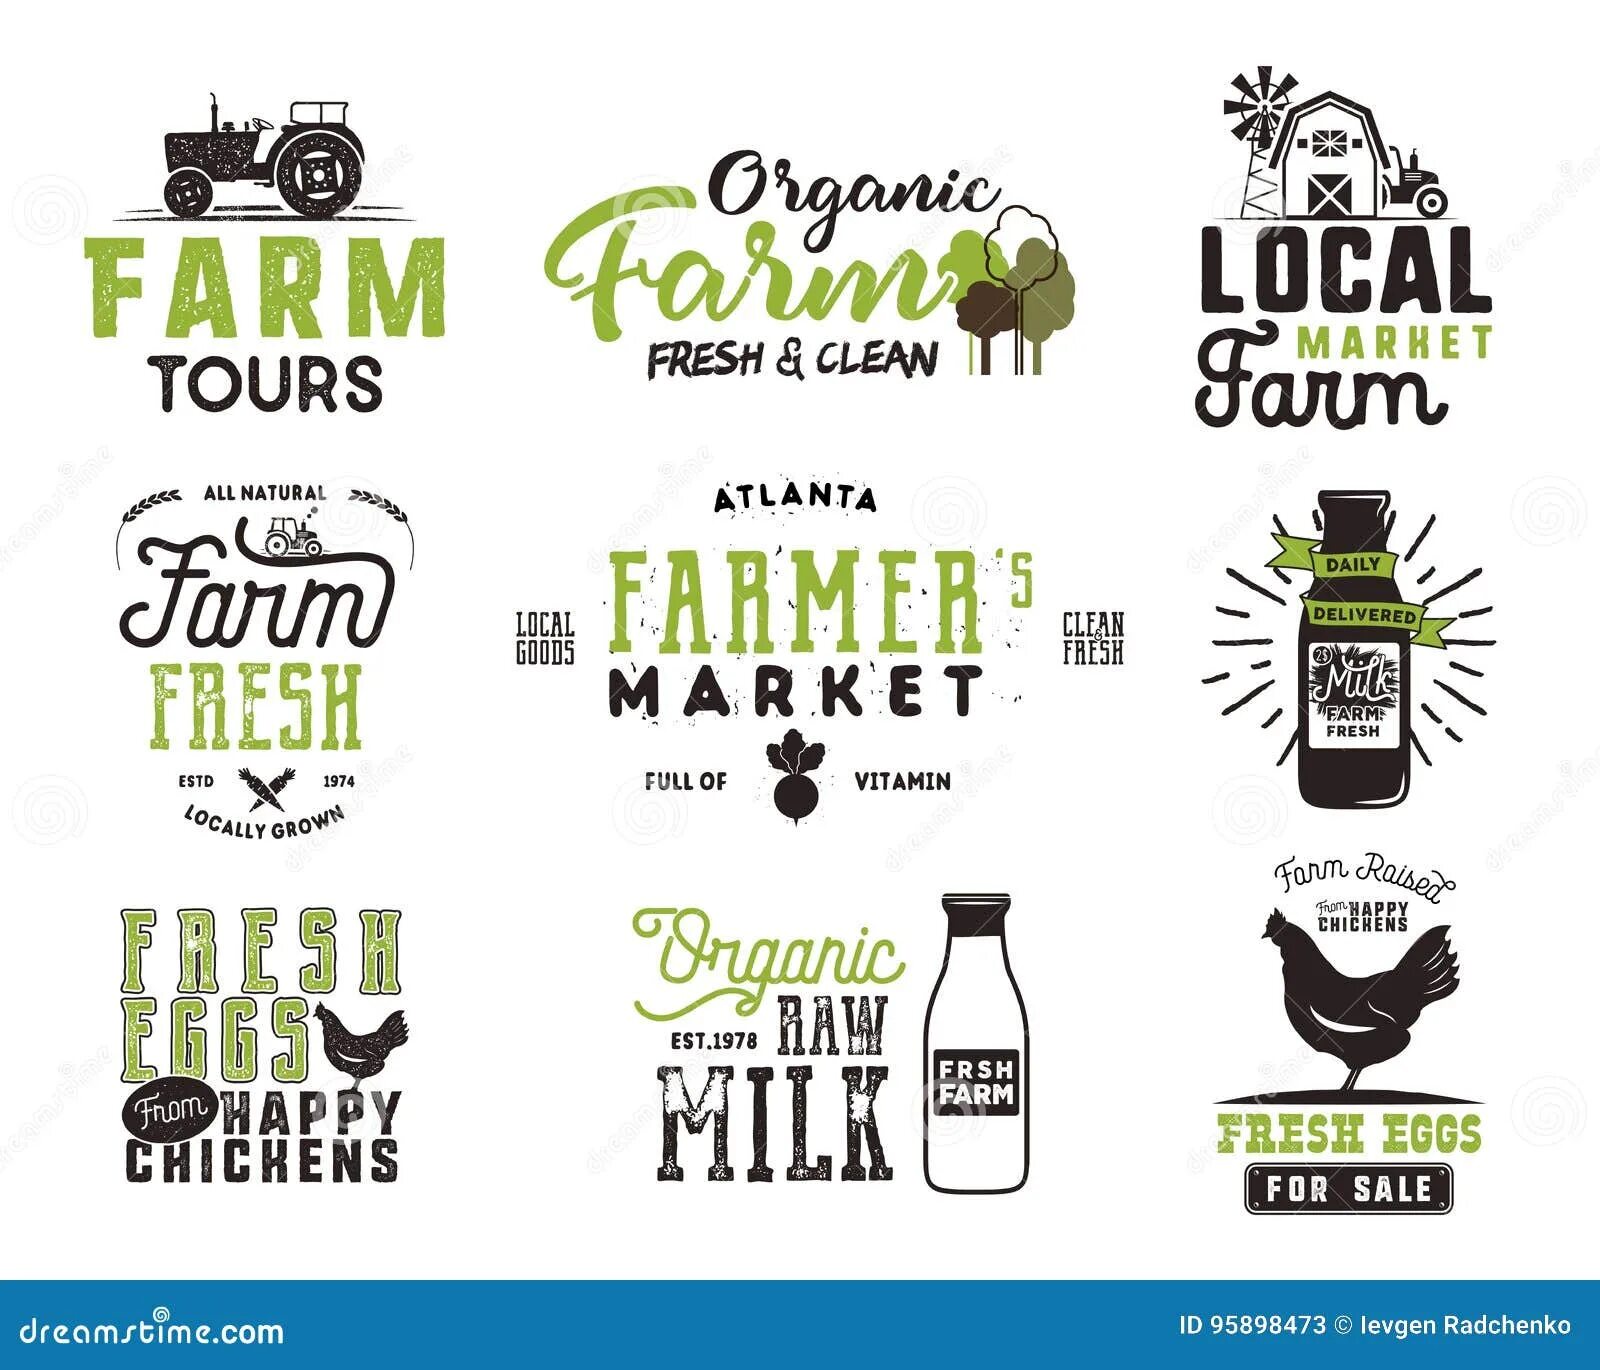 Фермерские продукты логотип. Фермерские продукты логотип вектор. Фермерские продукты картинки для логотипа. Фермерский эко продукт лого. Local product